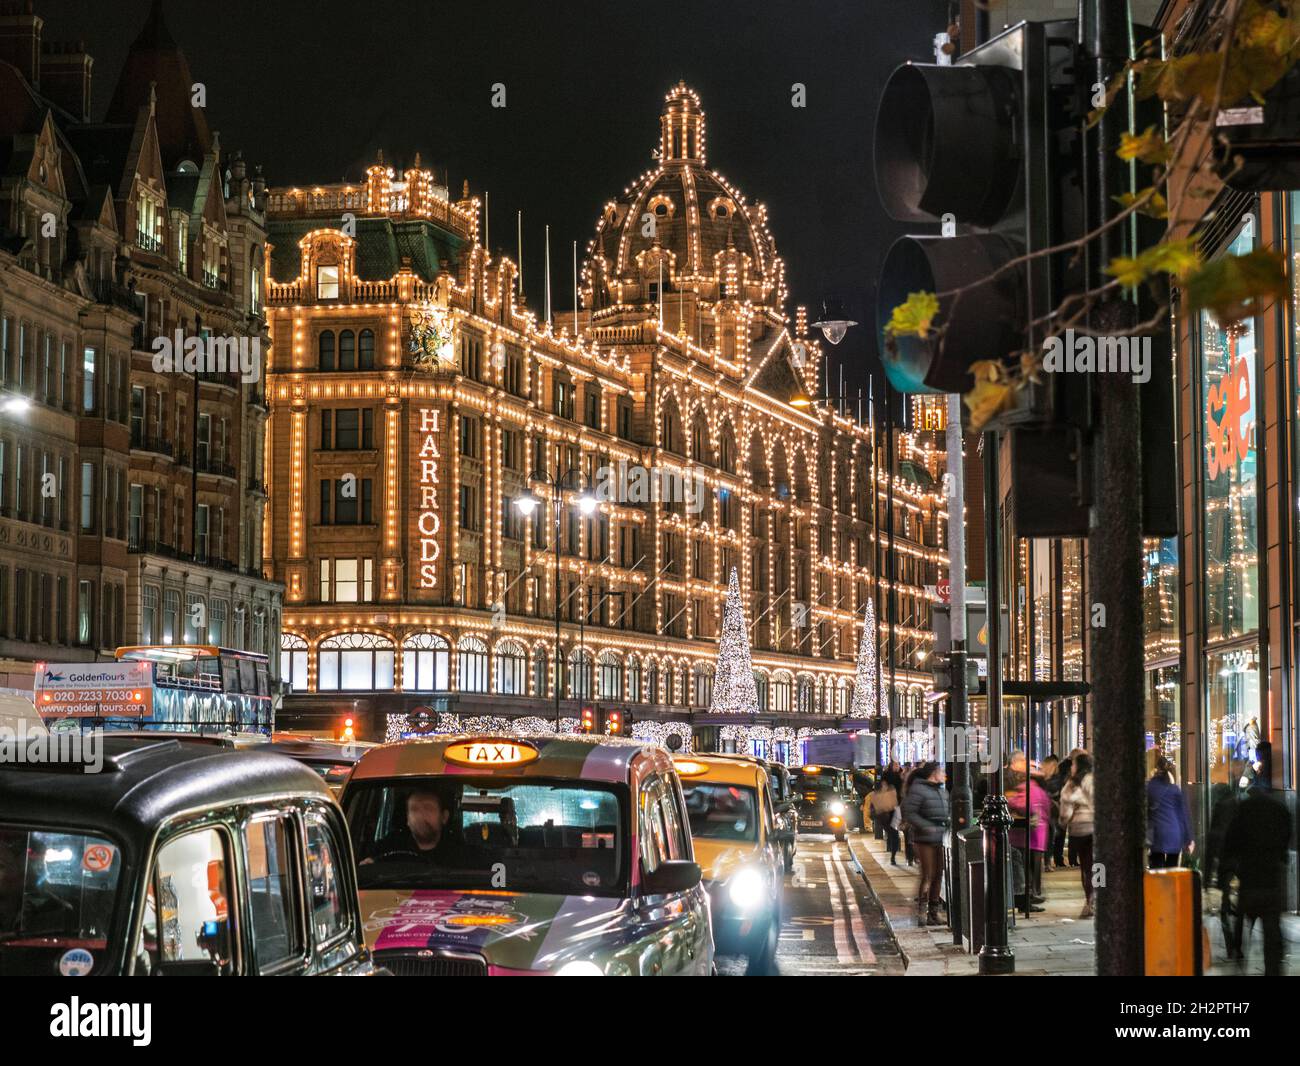 HARRODS TAXI ULEZ LONDRA NOTTE NATALE SHOPPING KNIGHTSBRIDGE Harrods grandi magazzini con luci al crepuscolo con luci di Natale acquirenti e taxi a noleggio Knightsbridge Londra SW1 Foto Stock